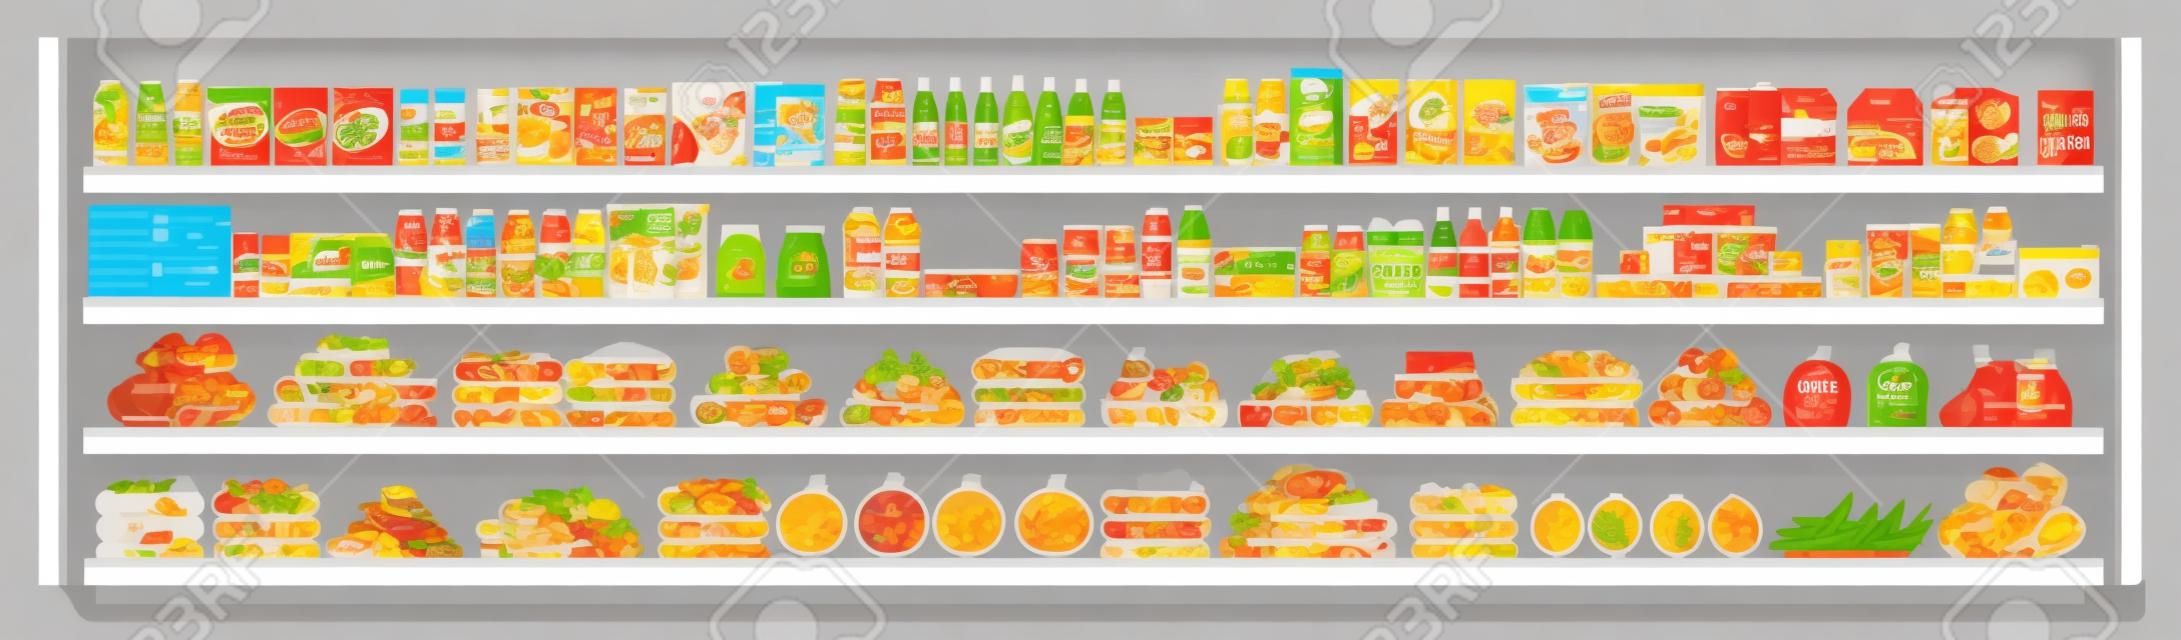 슈퍼마켓 진열대에 있는 식료품은 다양한 음식과 음료를 제공하며 평평한 벡터 매끄러운 배경 삽화를 제공합니다. 쇼핑 및 소매 개념입니다.